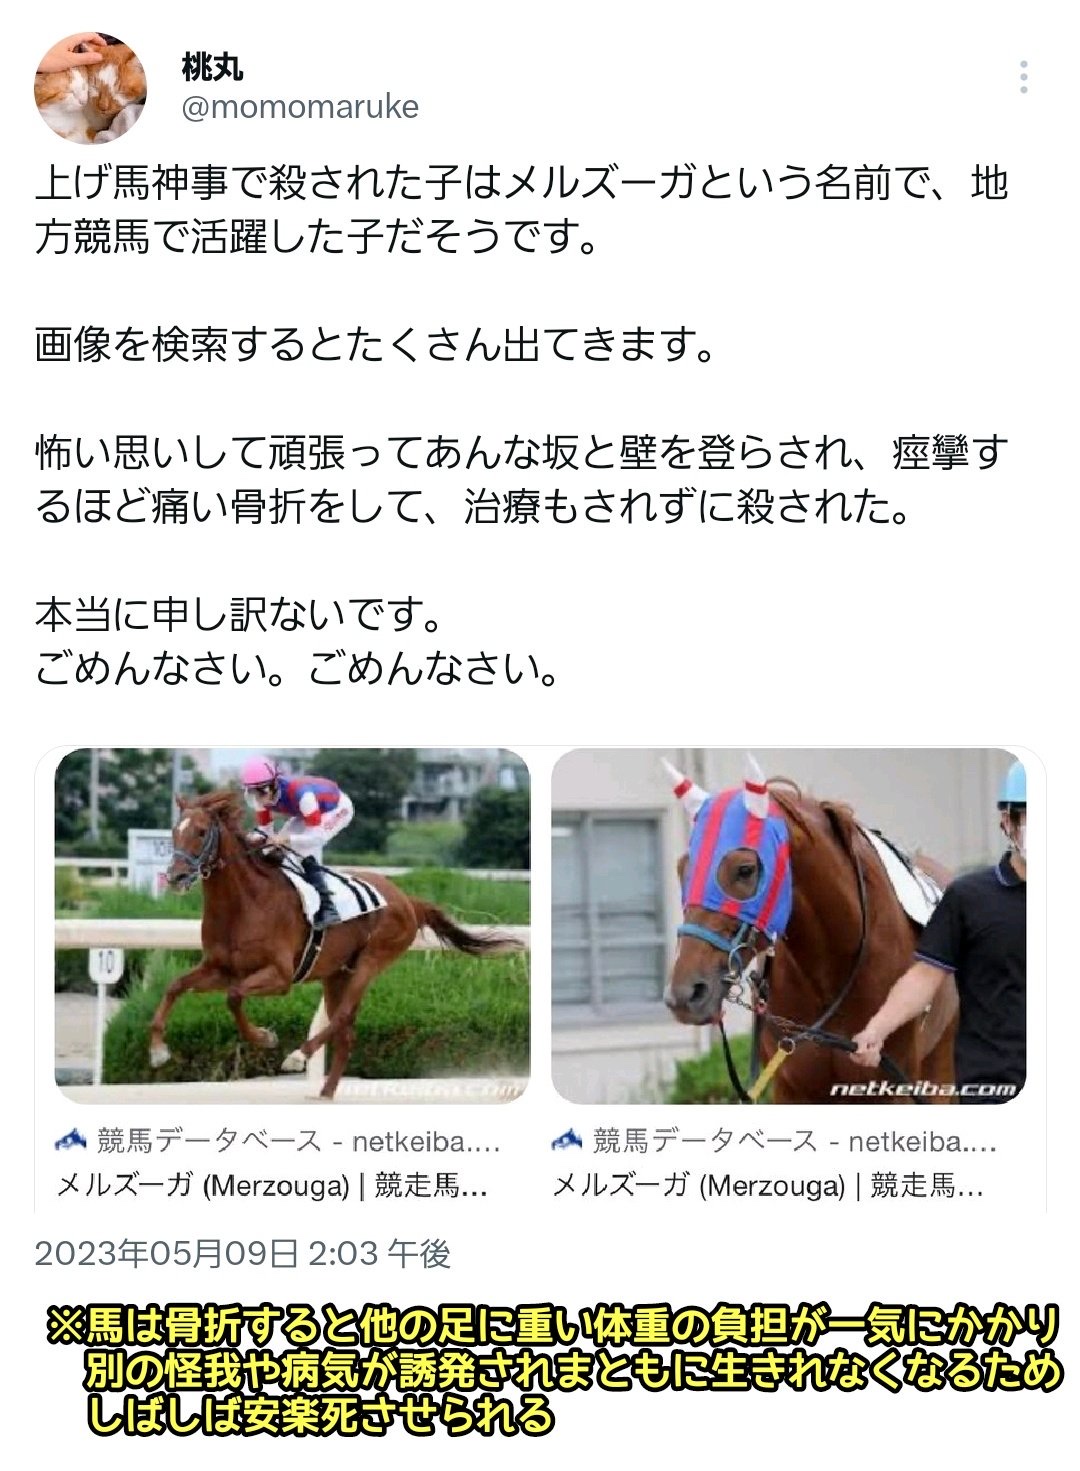 日本伝統の上げ馬神事で馬が骨折してしまい安楽○へ…案の定Twitterで大炎上競馬は許されるのに？\n_1